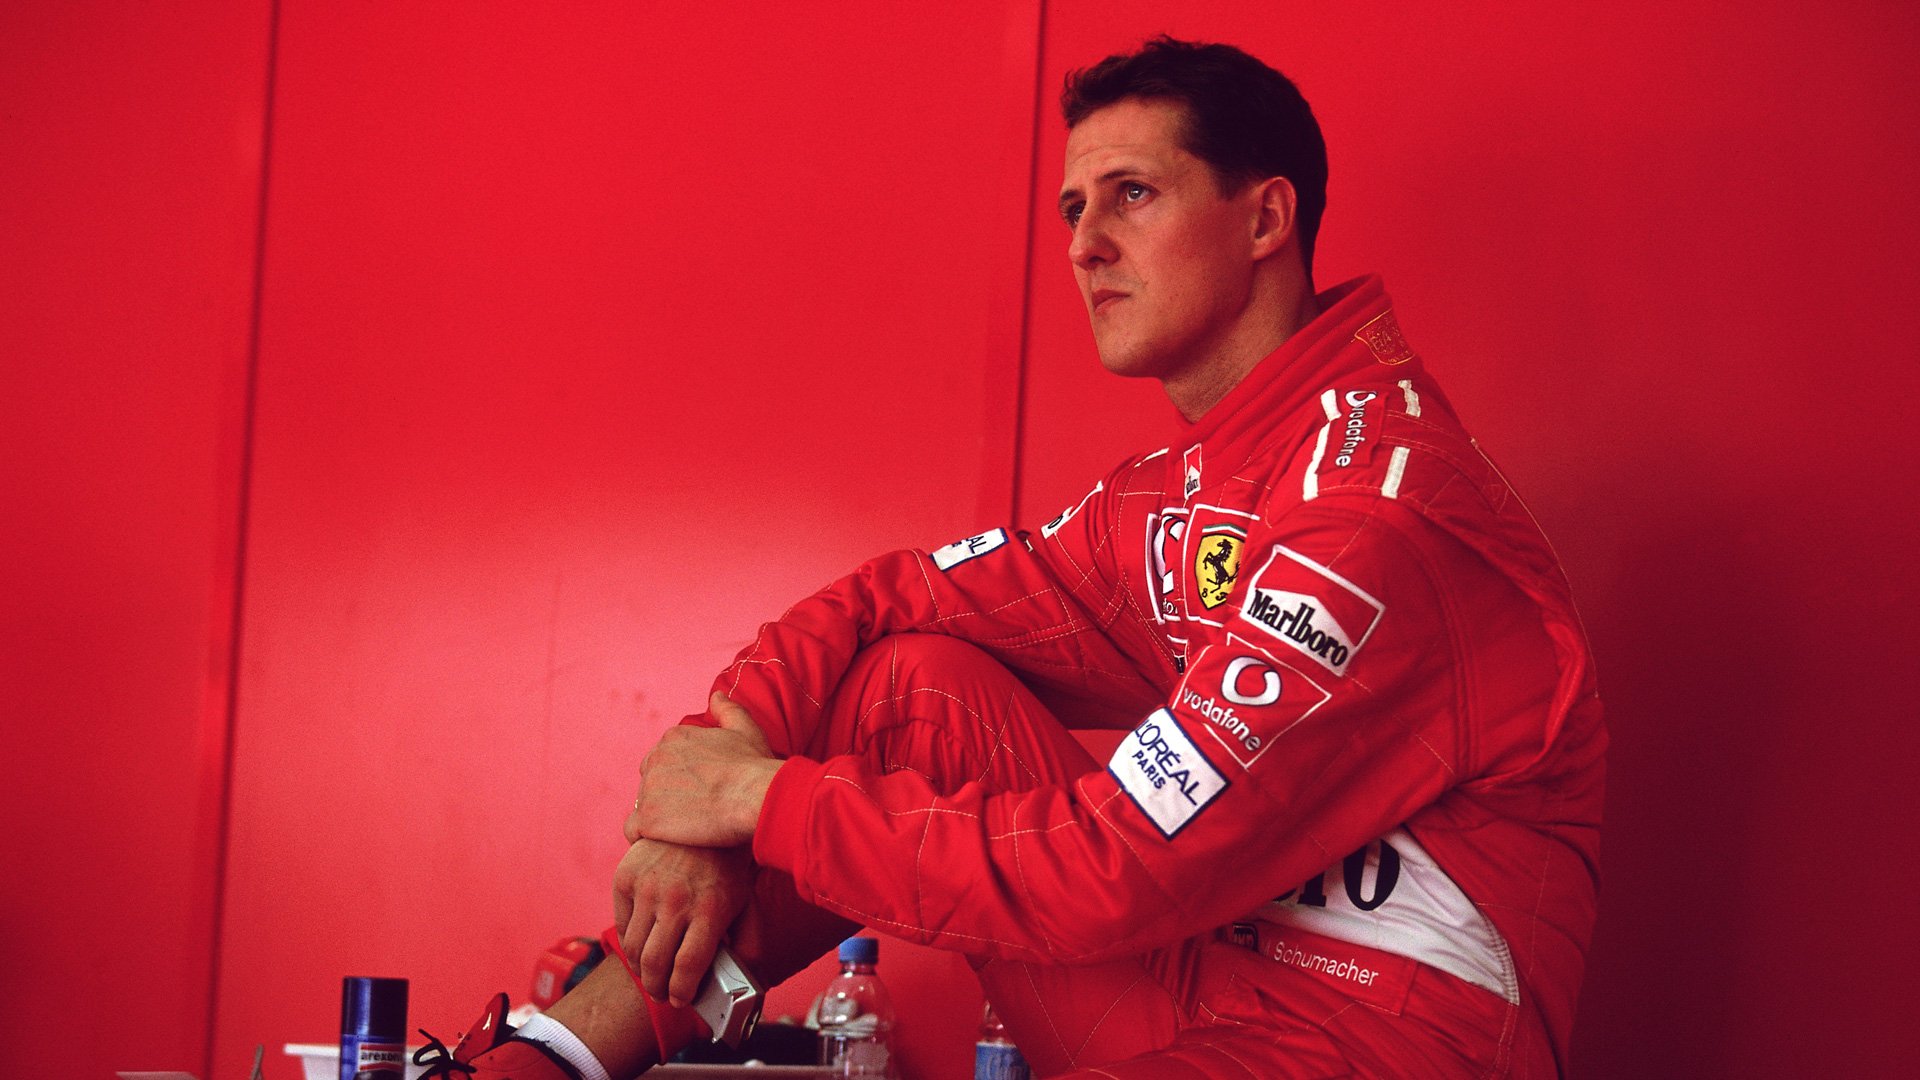 Despidieron a la editora de la revista alemana que publicó la falsa entrevista a Michael Schumacher | Canal Showsport